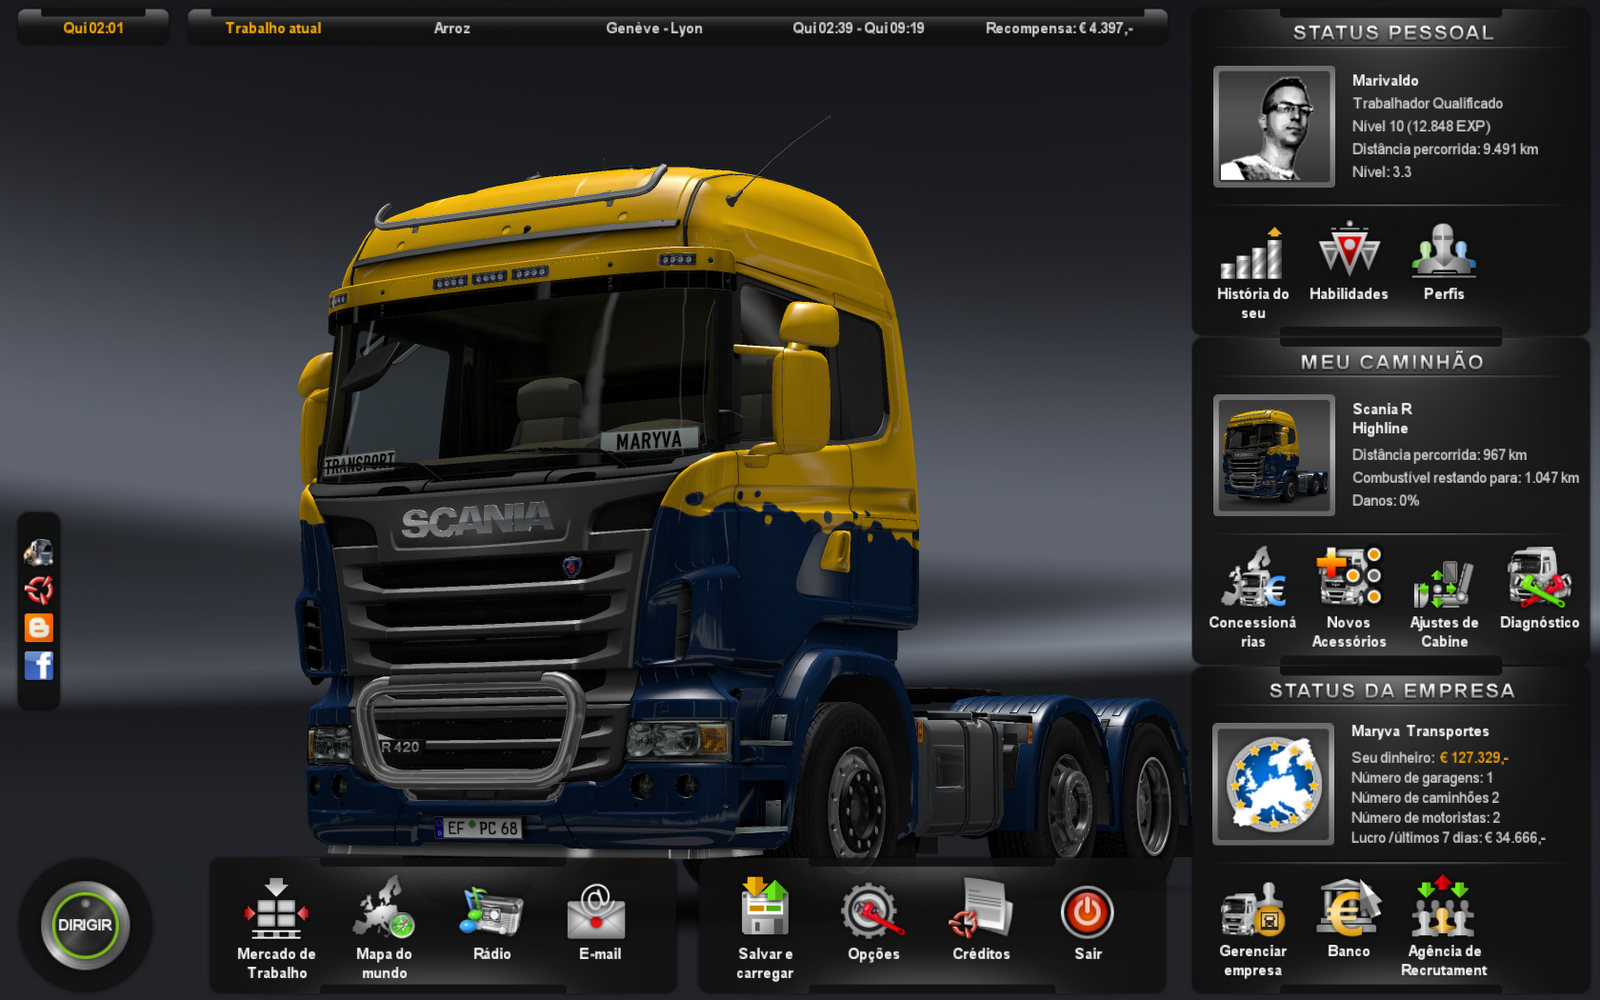 euro truck simulator 2 update 1.24